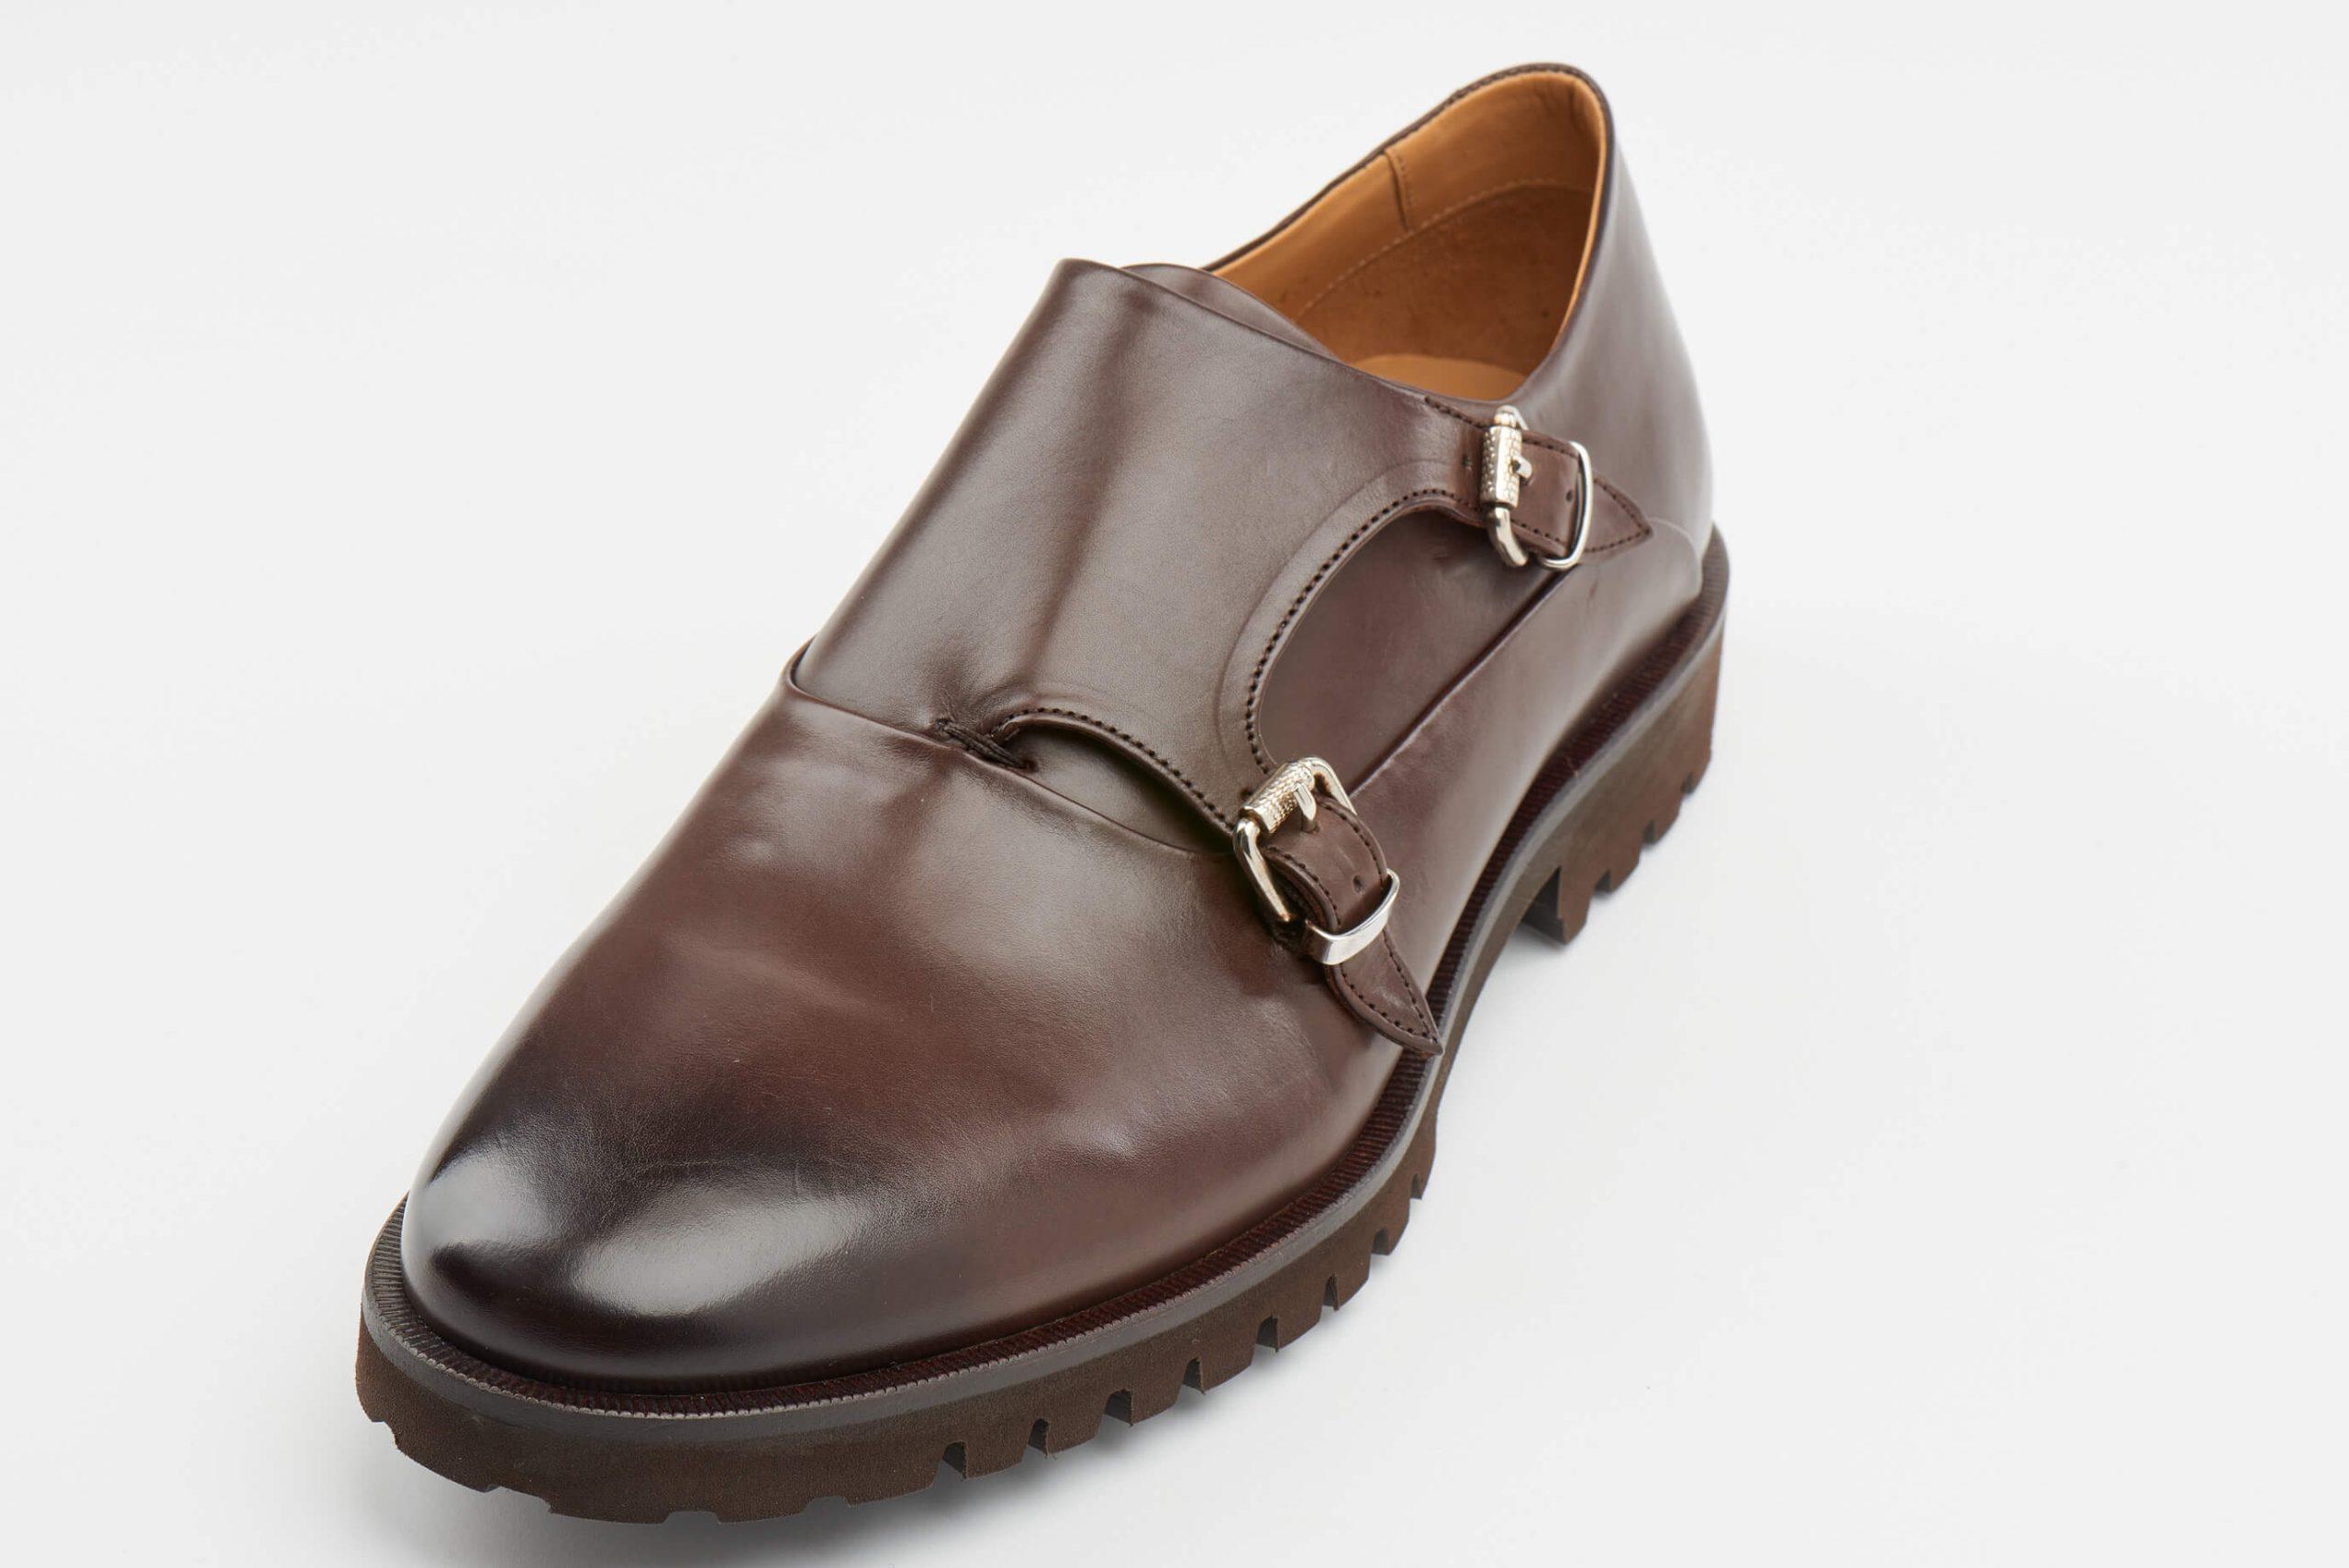 Luis Onofre Portuguese Shoes FW22 – HS0804_02 – Cozy Light brown-8